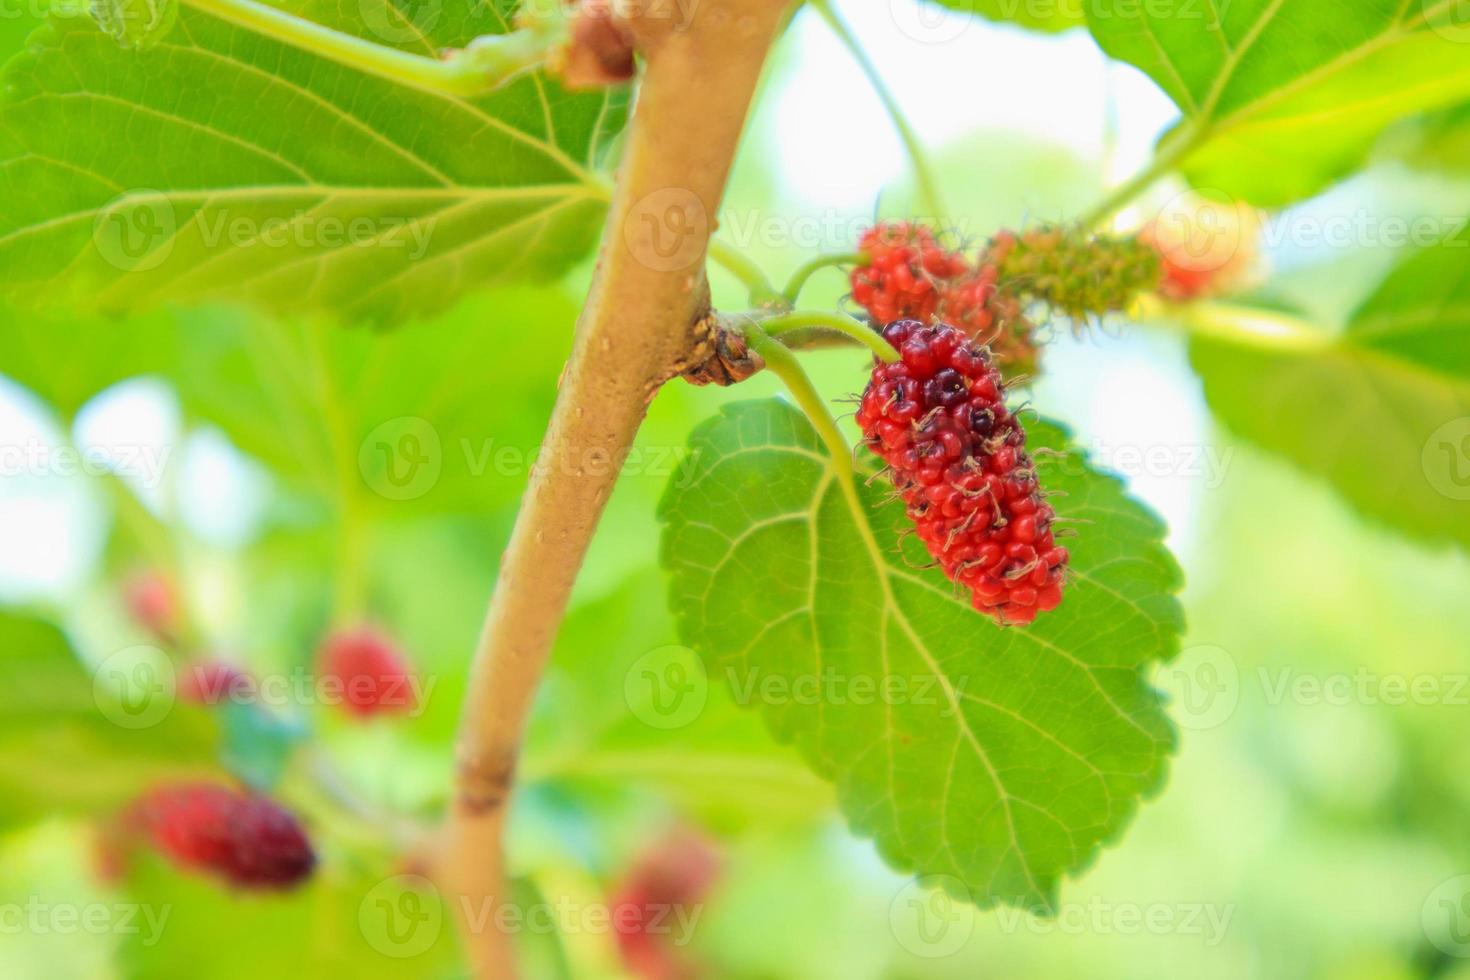 färska röda mullbärsfrukter på trädgren foto